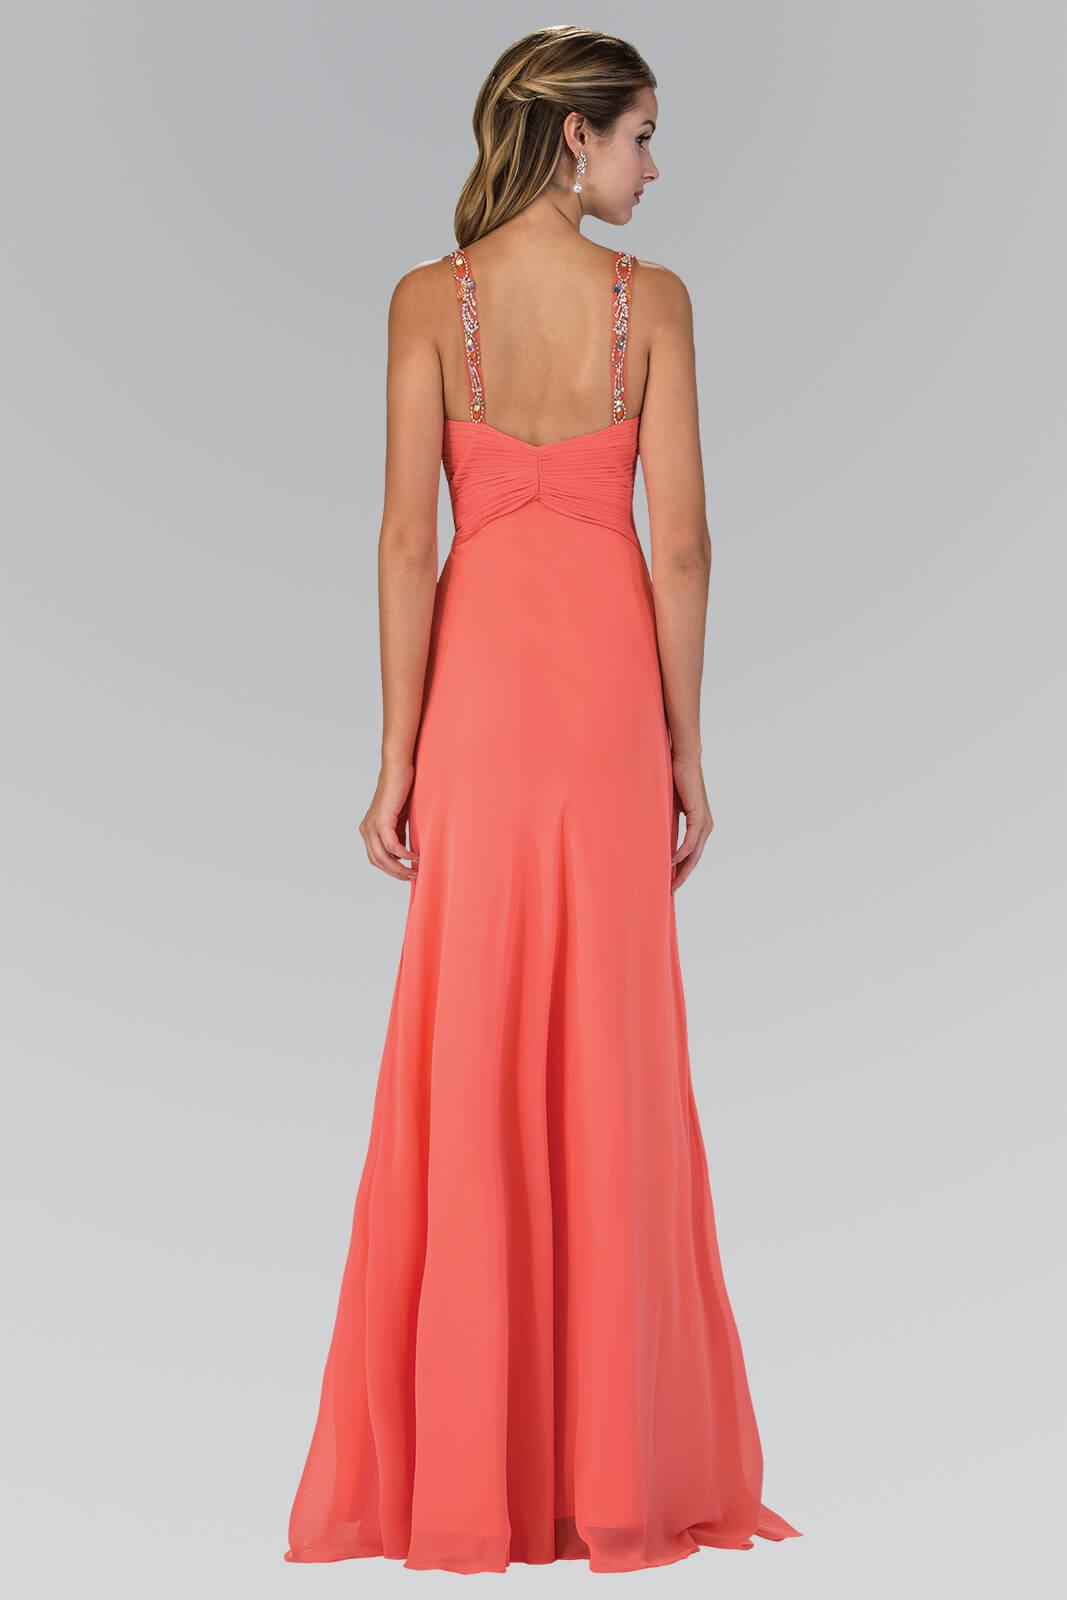 Jewel Embellished Chiffon Long Prom Dress Formal - The Dress Outlet Elizabeth K